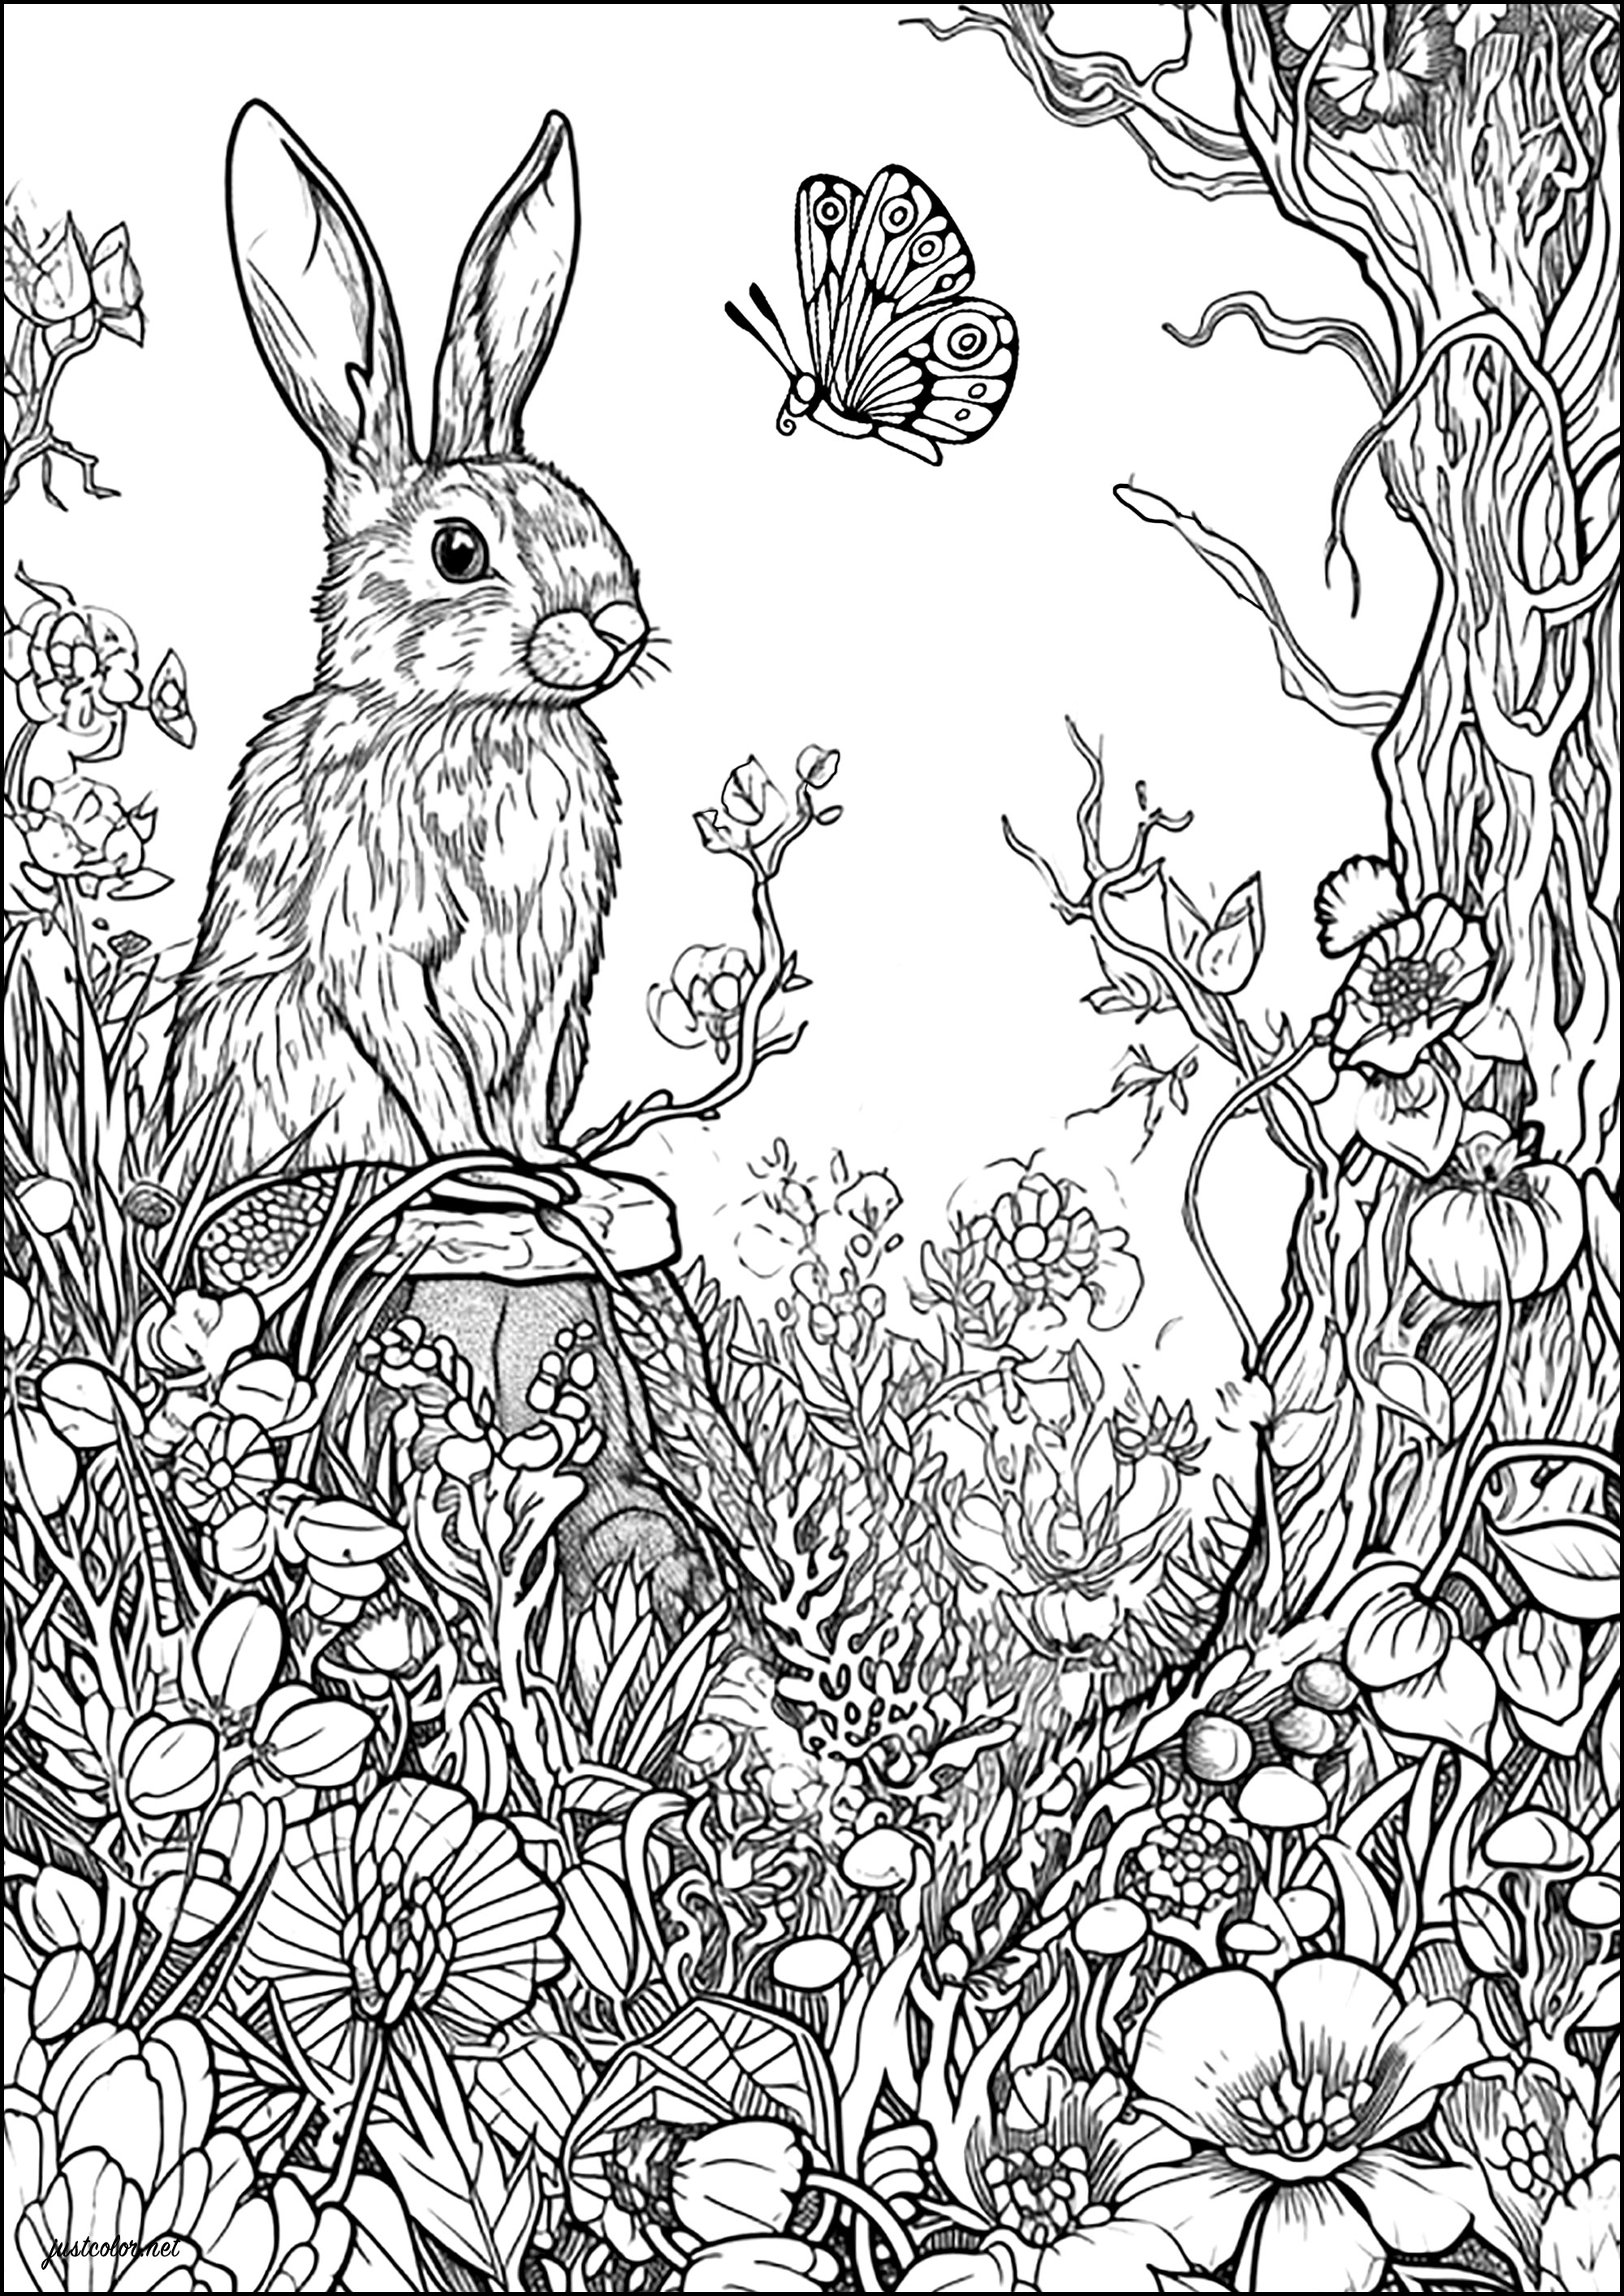 Das Kaninchen und der Schmetterling. Male dieses schöne Kaninchen und den Schmetterling, mit dem es sich zu unterhalten scheint, sowie die vielen Blumen, die sie in diesem verzauberten Wald umgeben, aus.